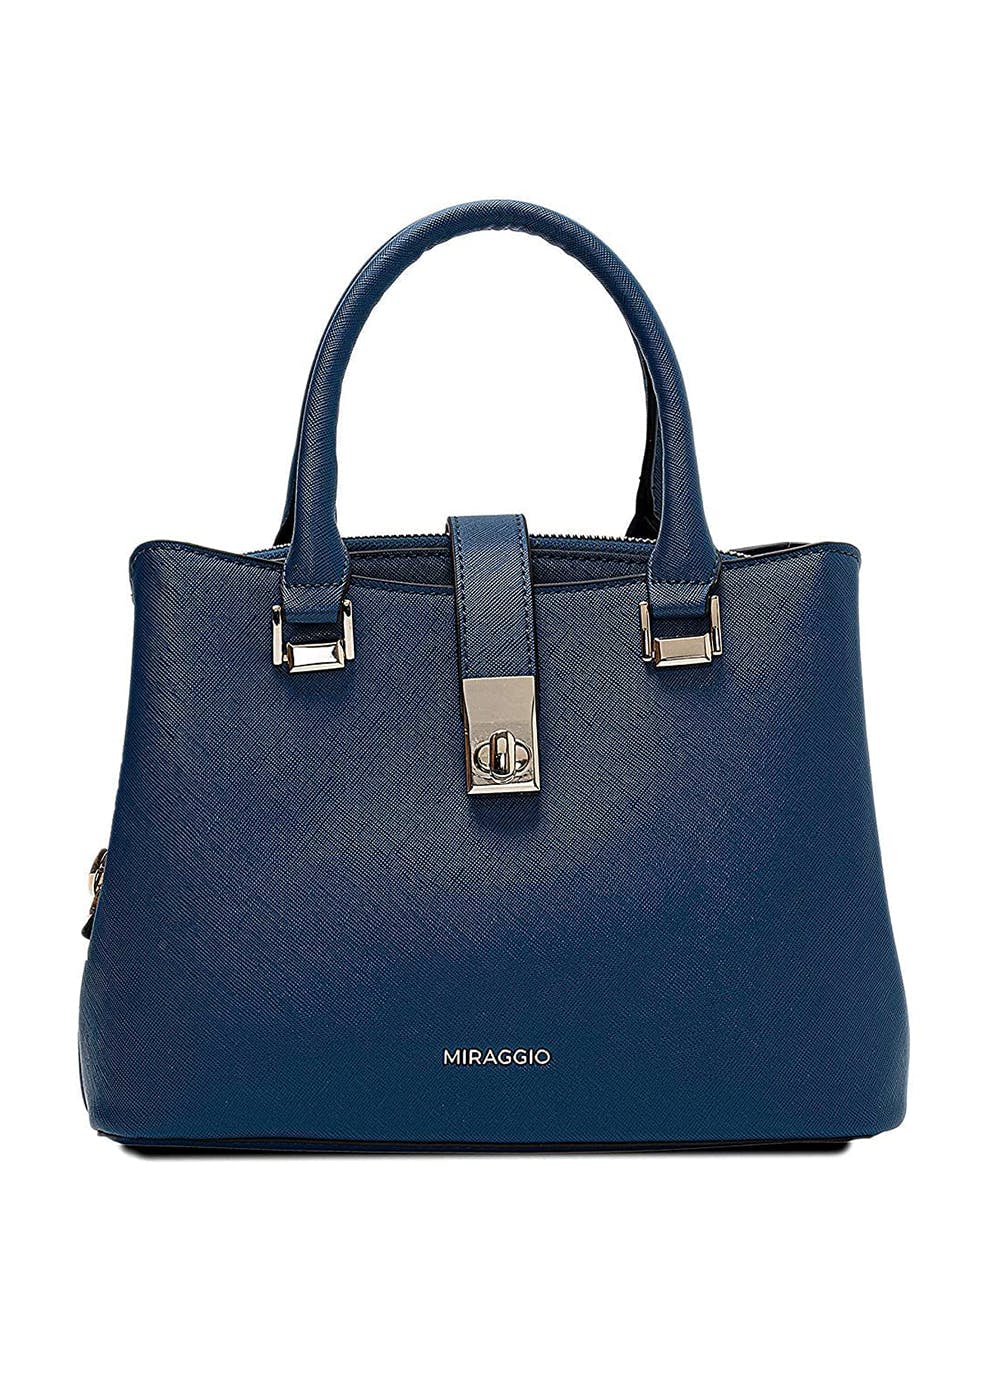 Get Catalina Satchel Handbag at ₹ 2999 | LBB Shop